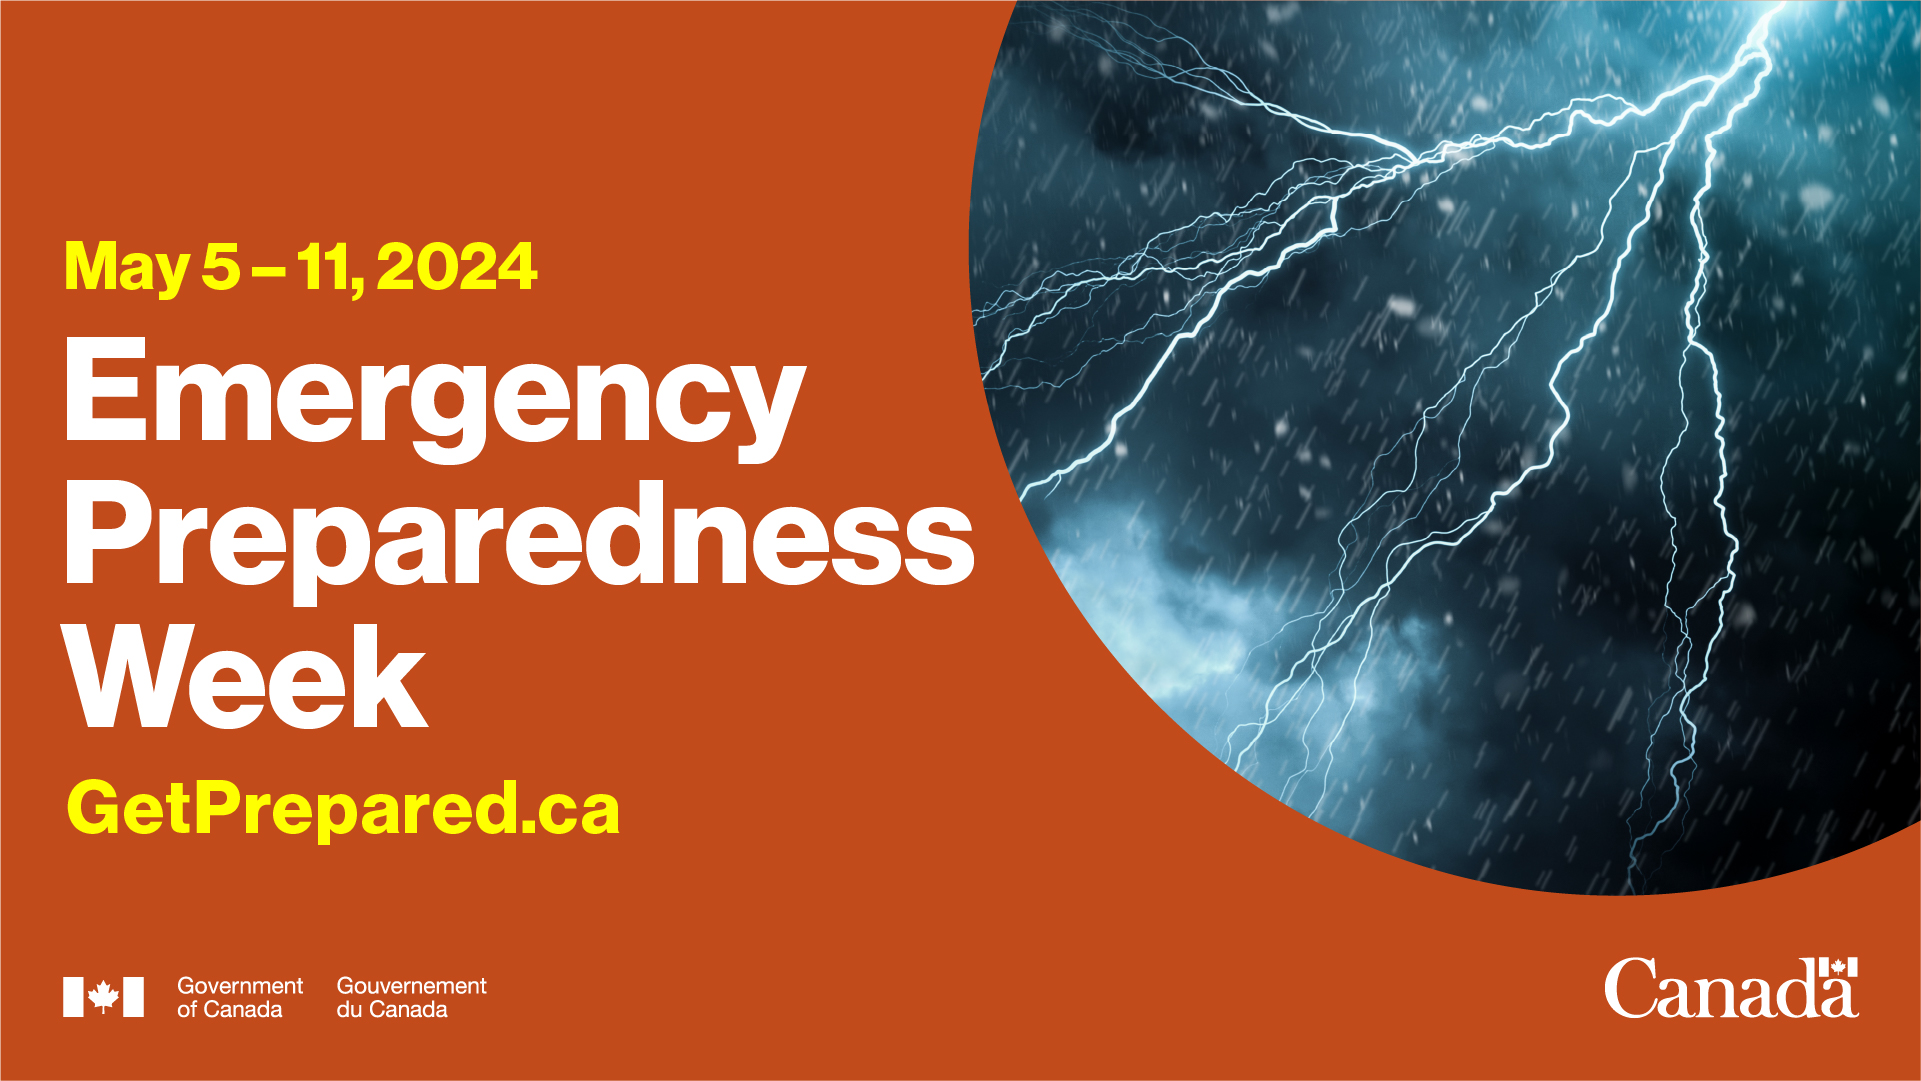 Image of Emergency Preparedness Week 2024